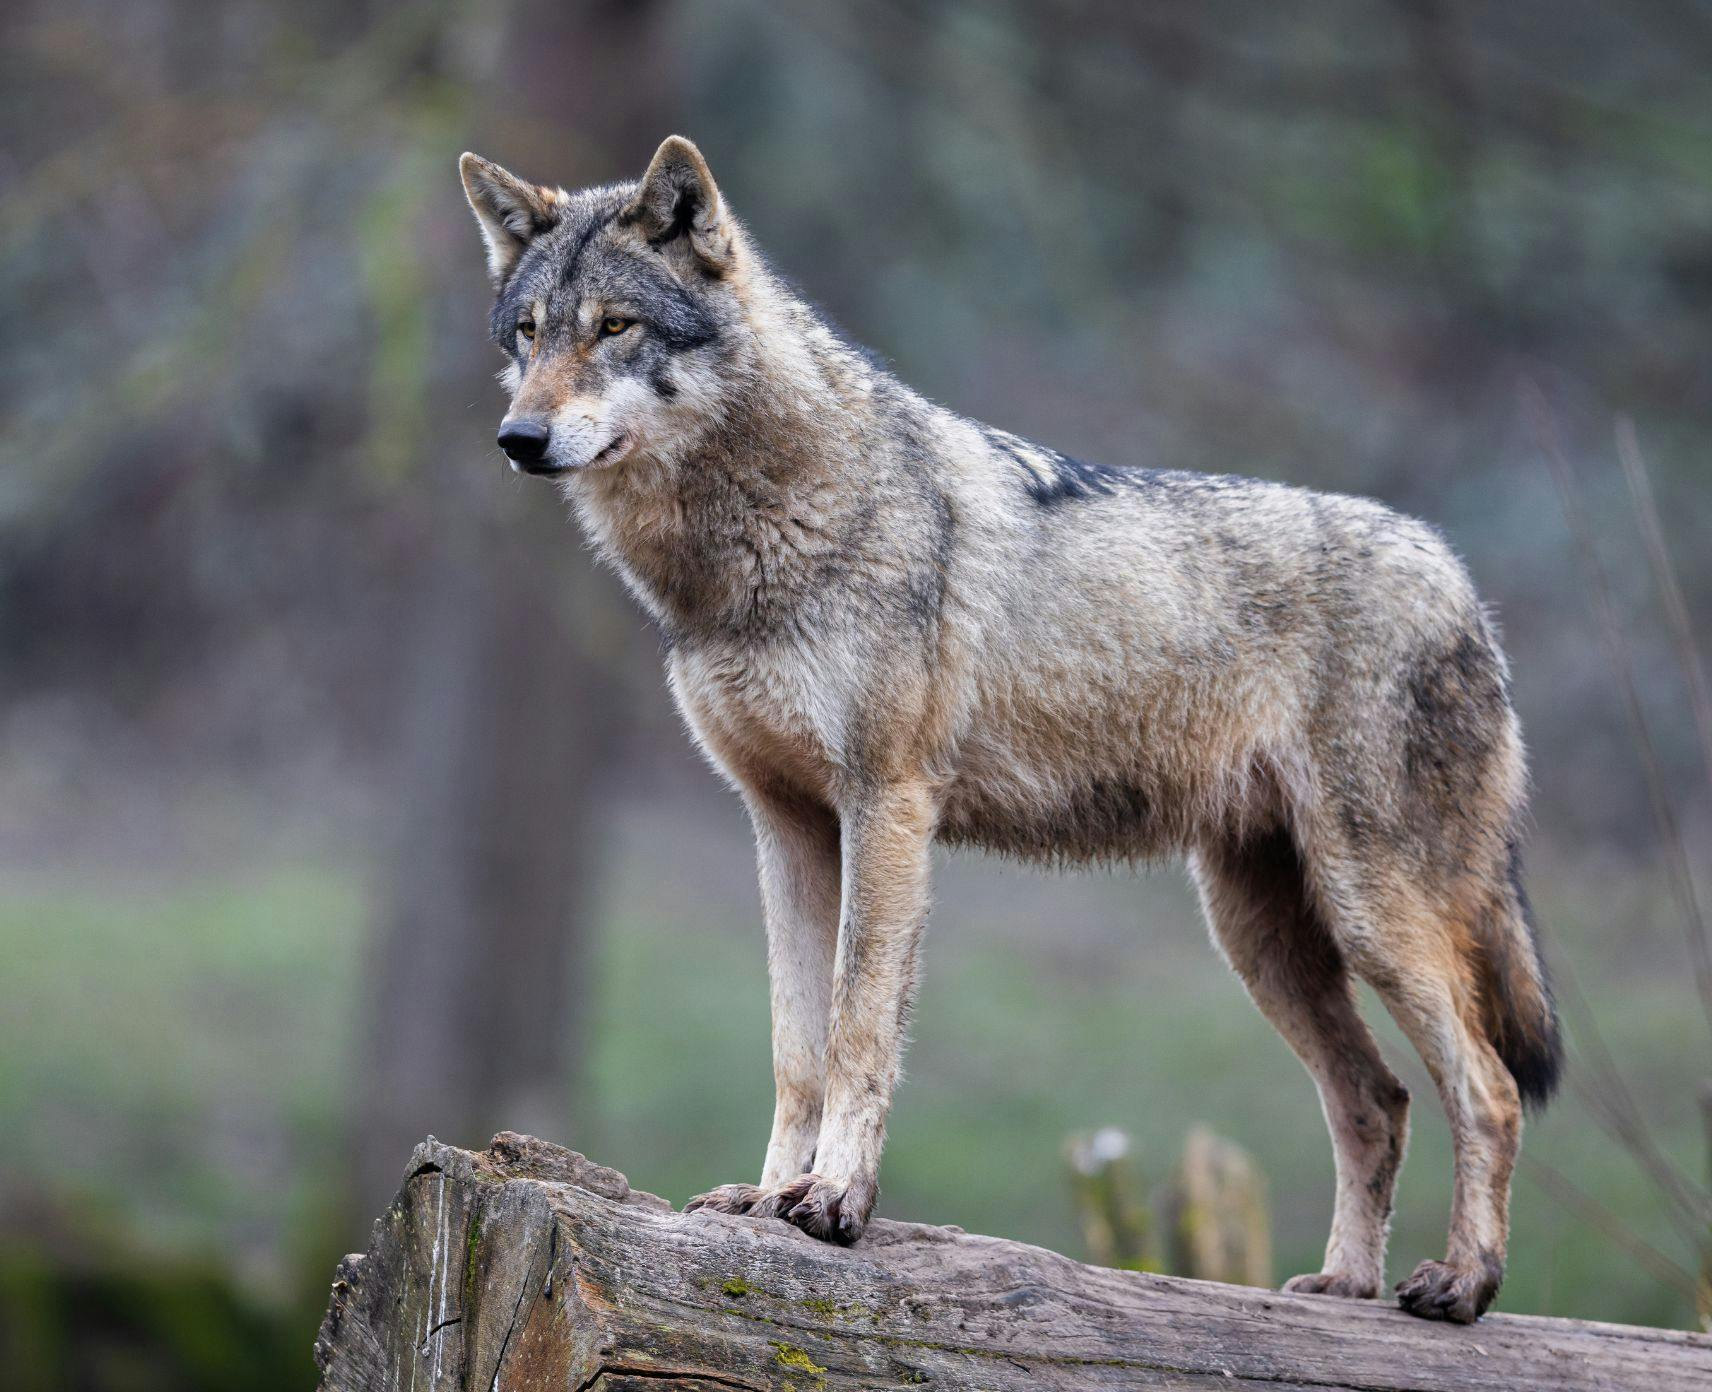 A grey wolf on a log